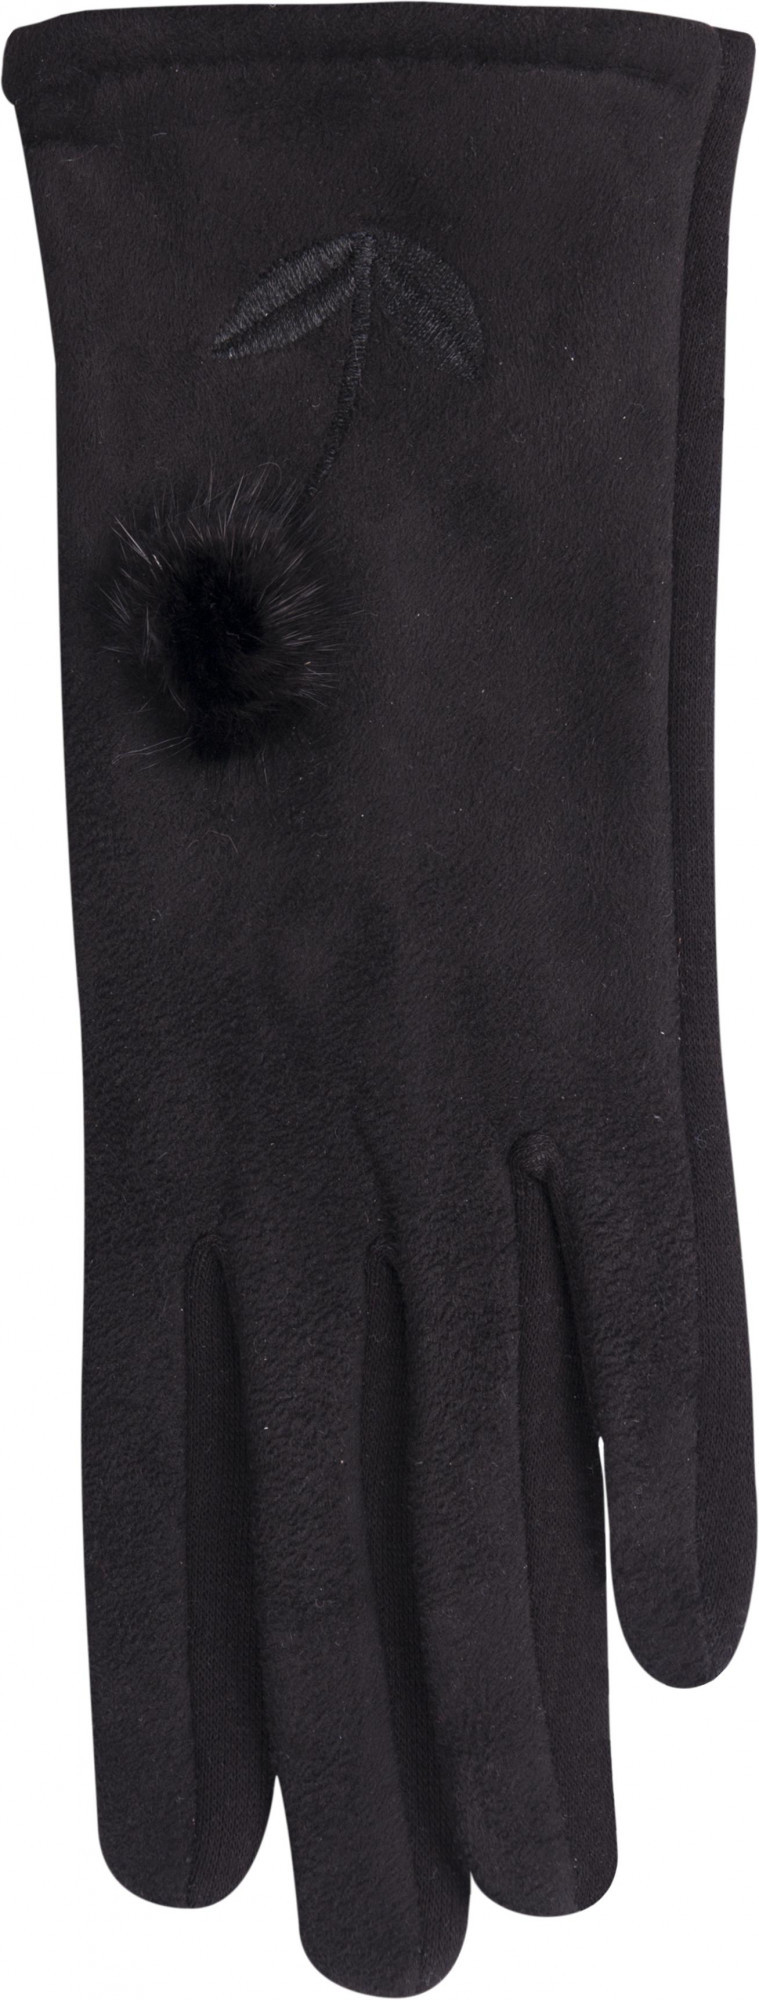 Dámské rukavice model 7951015 černá černá 24 cm - Yoclub